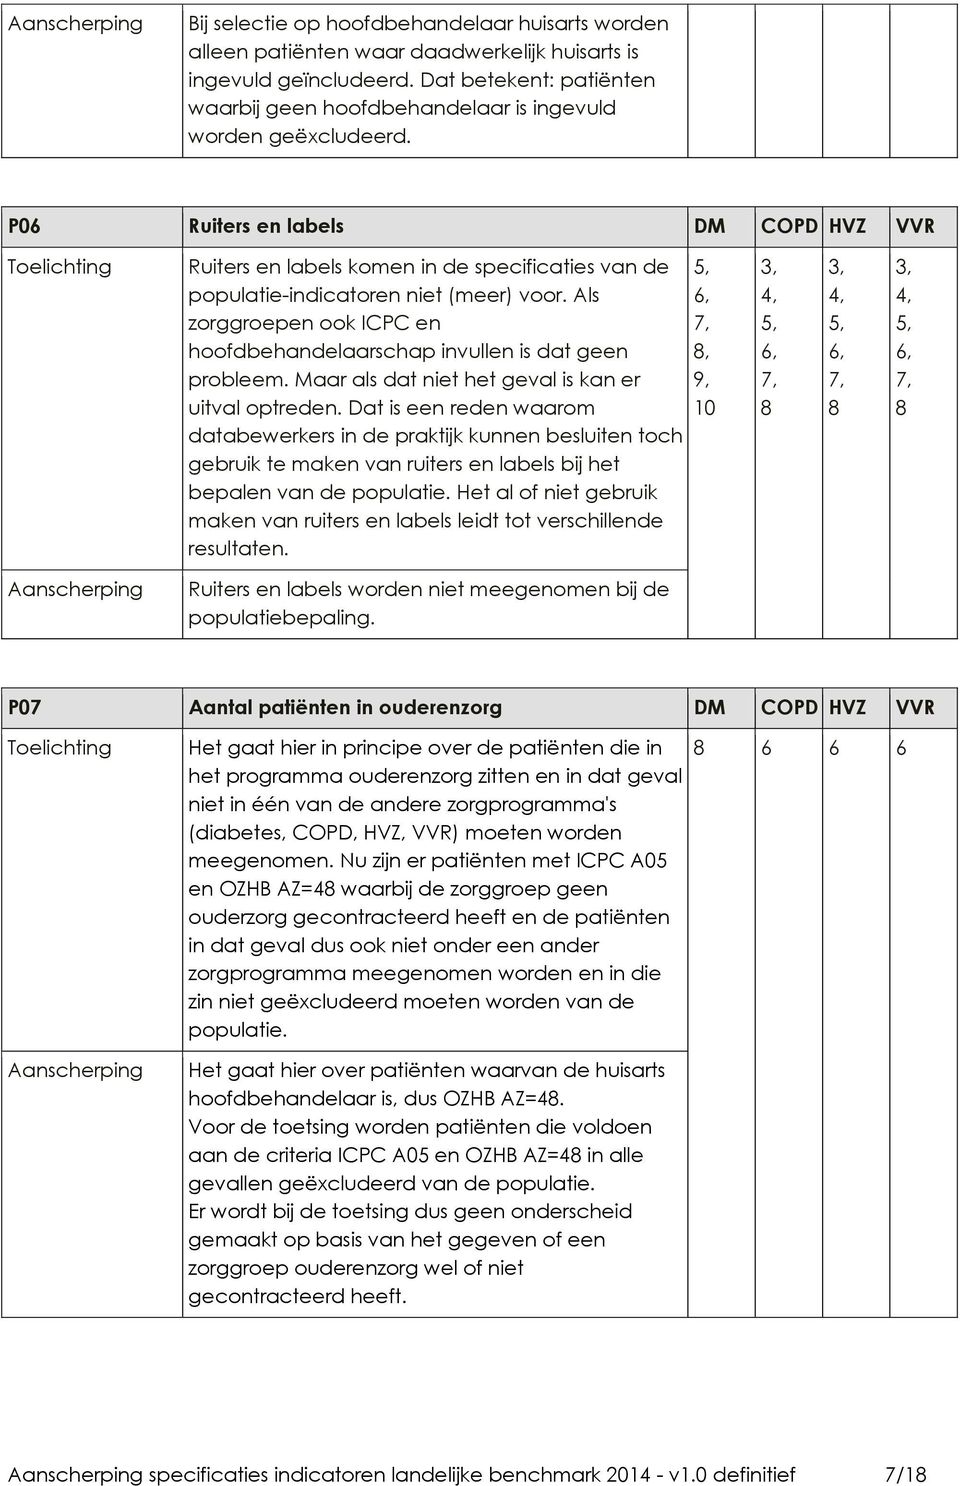 P06 Ruiters en labels DM COPD HVZ VVR Ruiters en labels komen in de specificaties van de populatie-indicatoren niet (meer) voor.